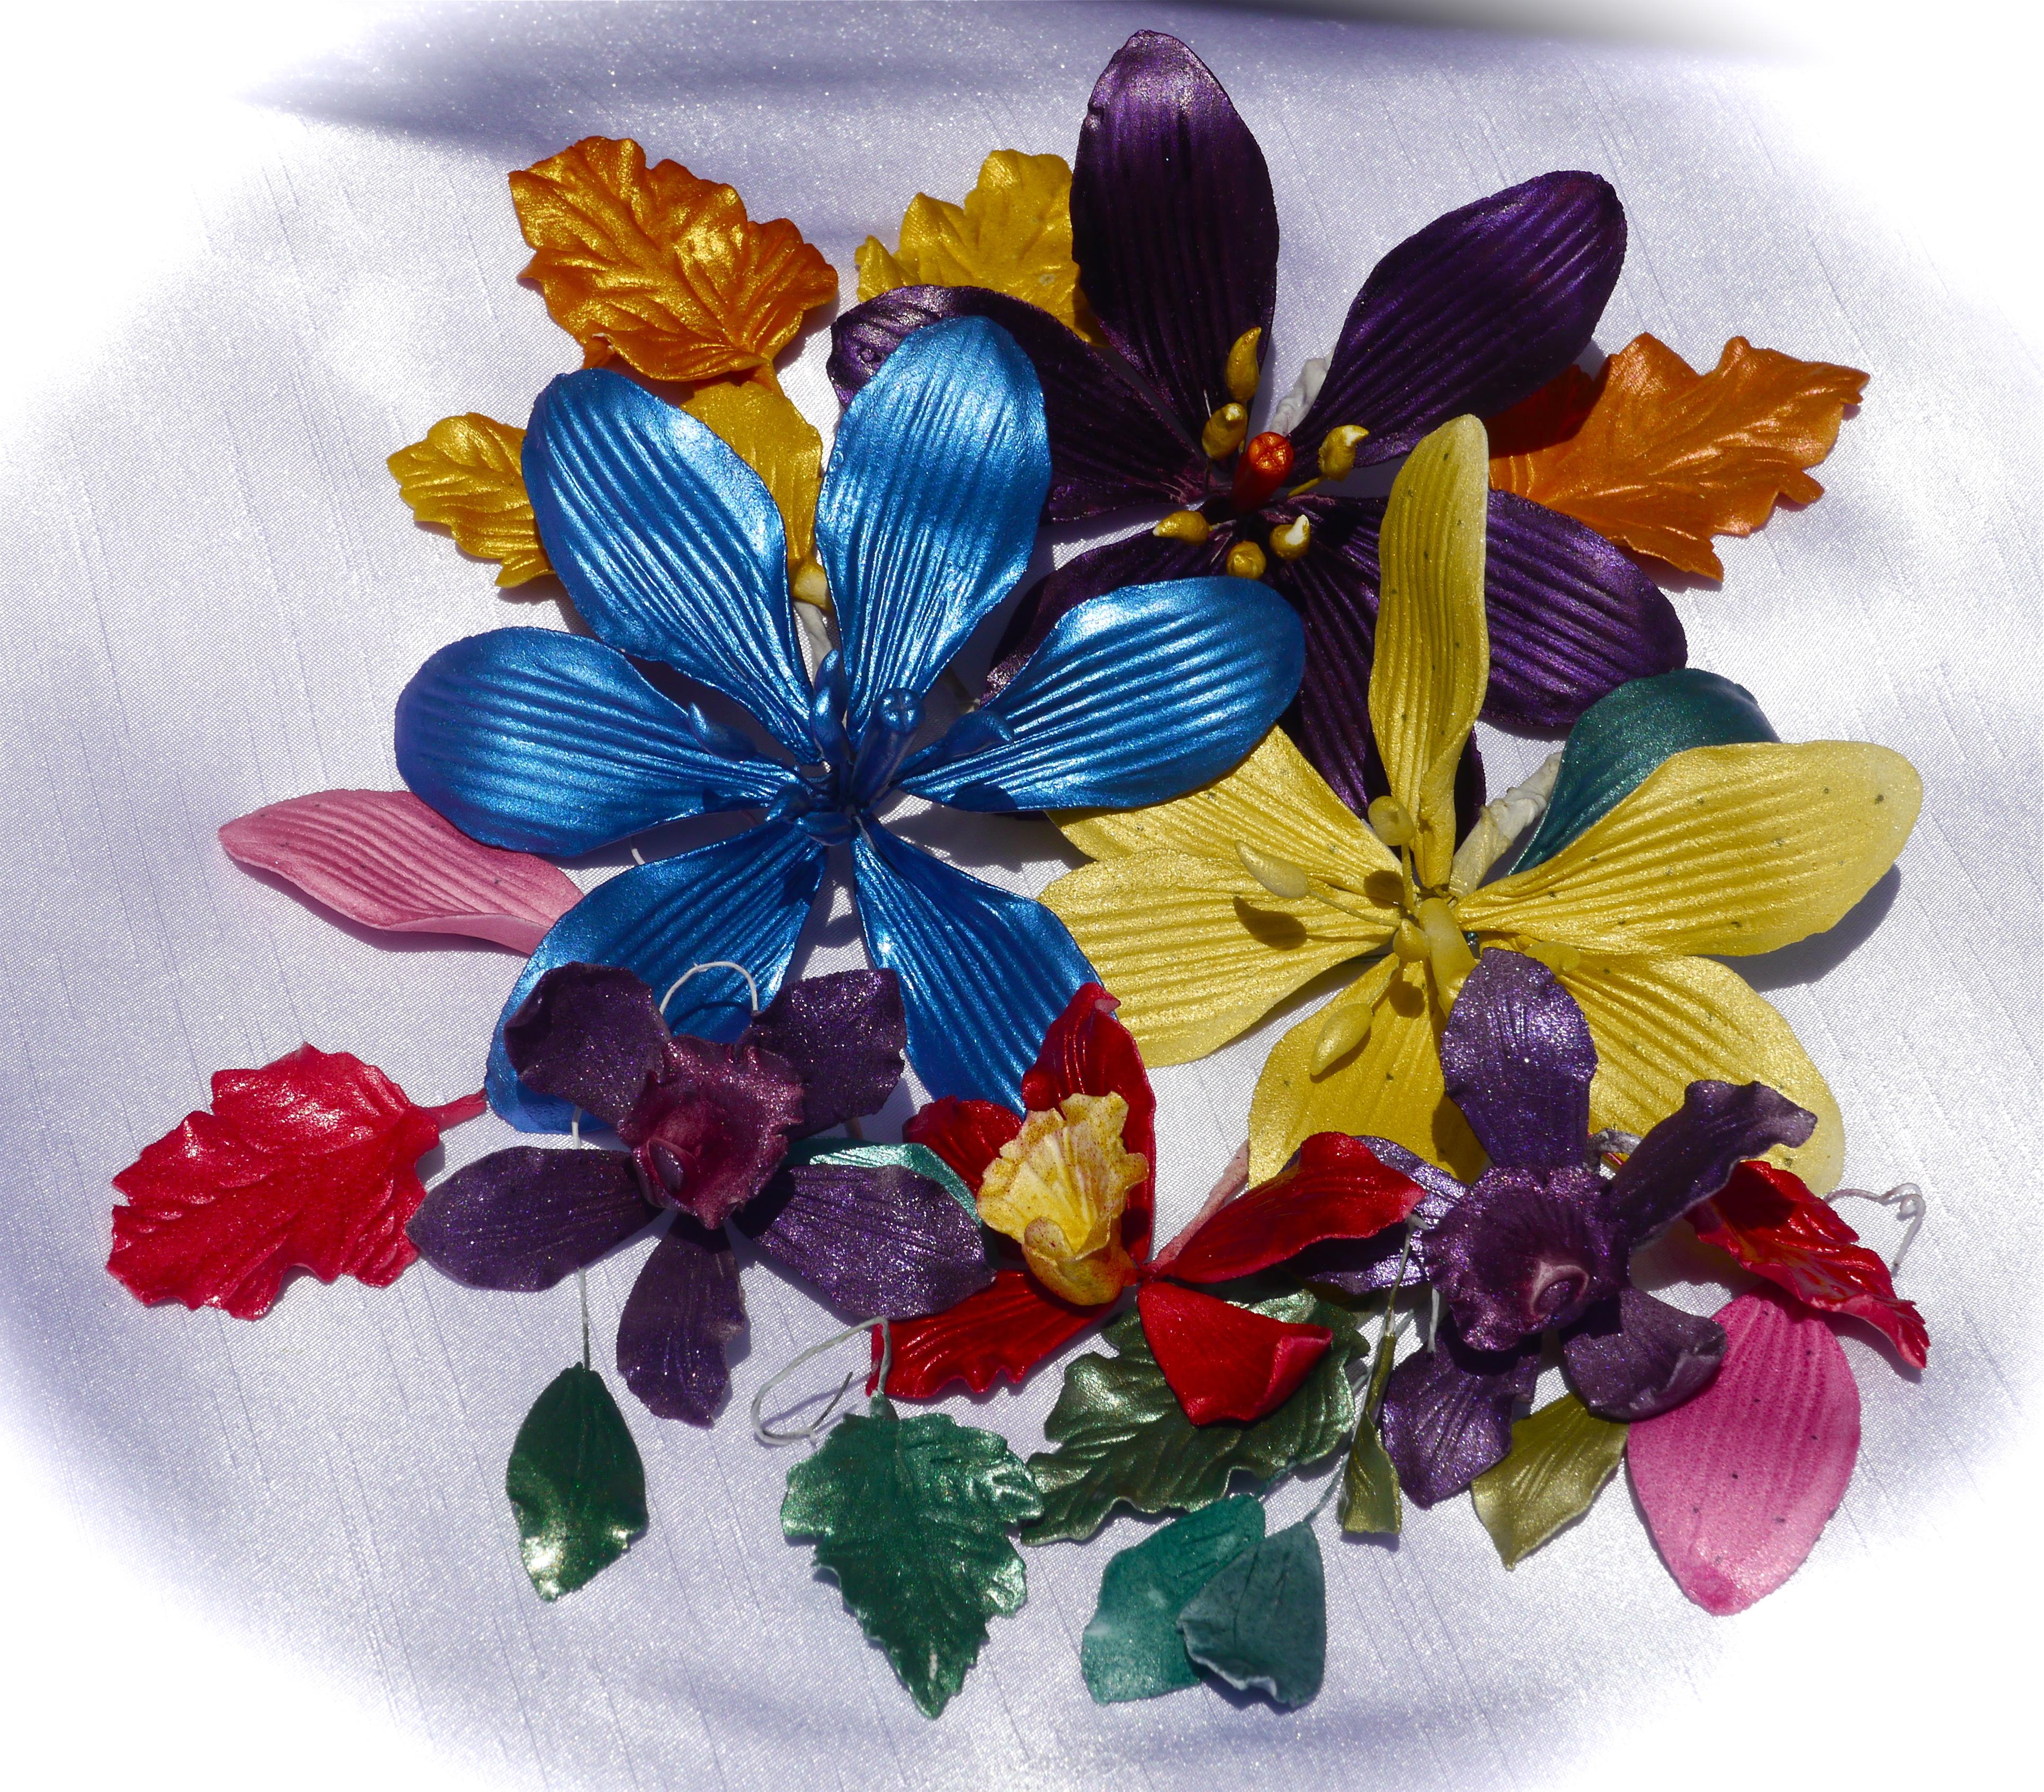 Trucolor Natural Bouquet